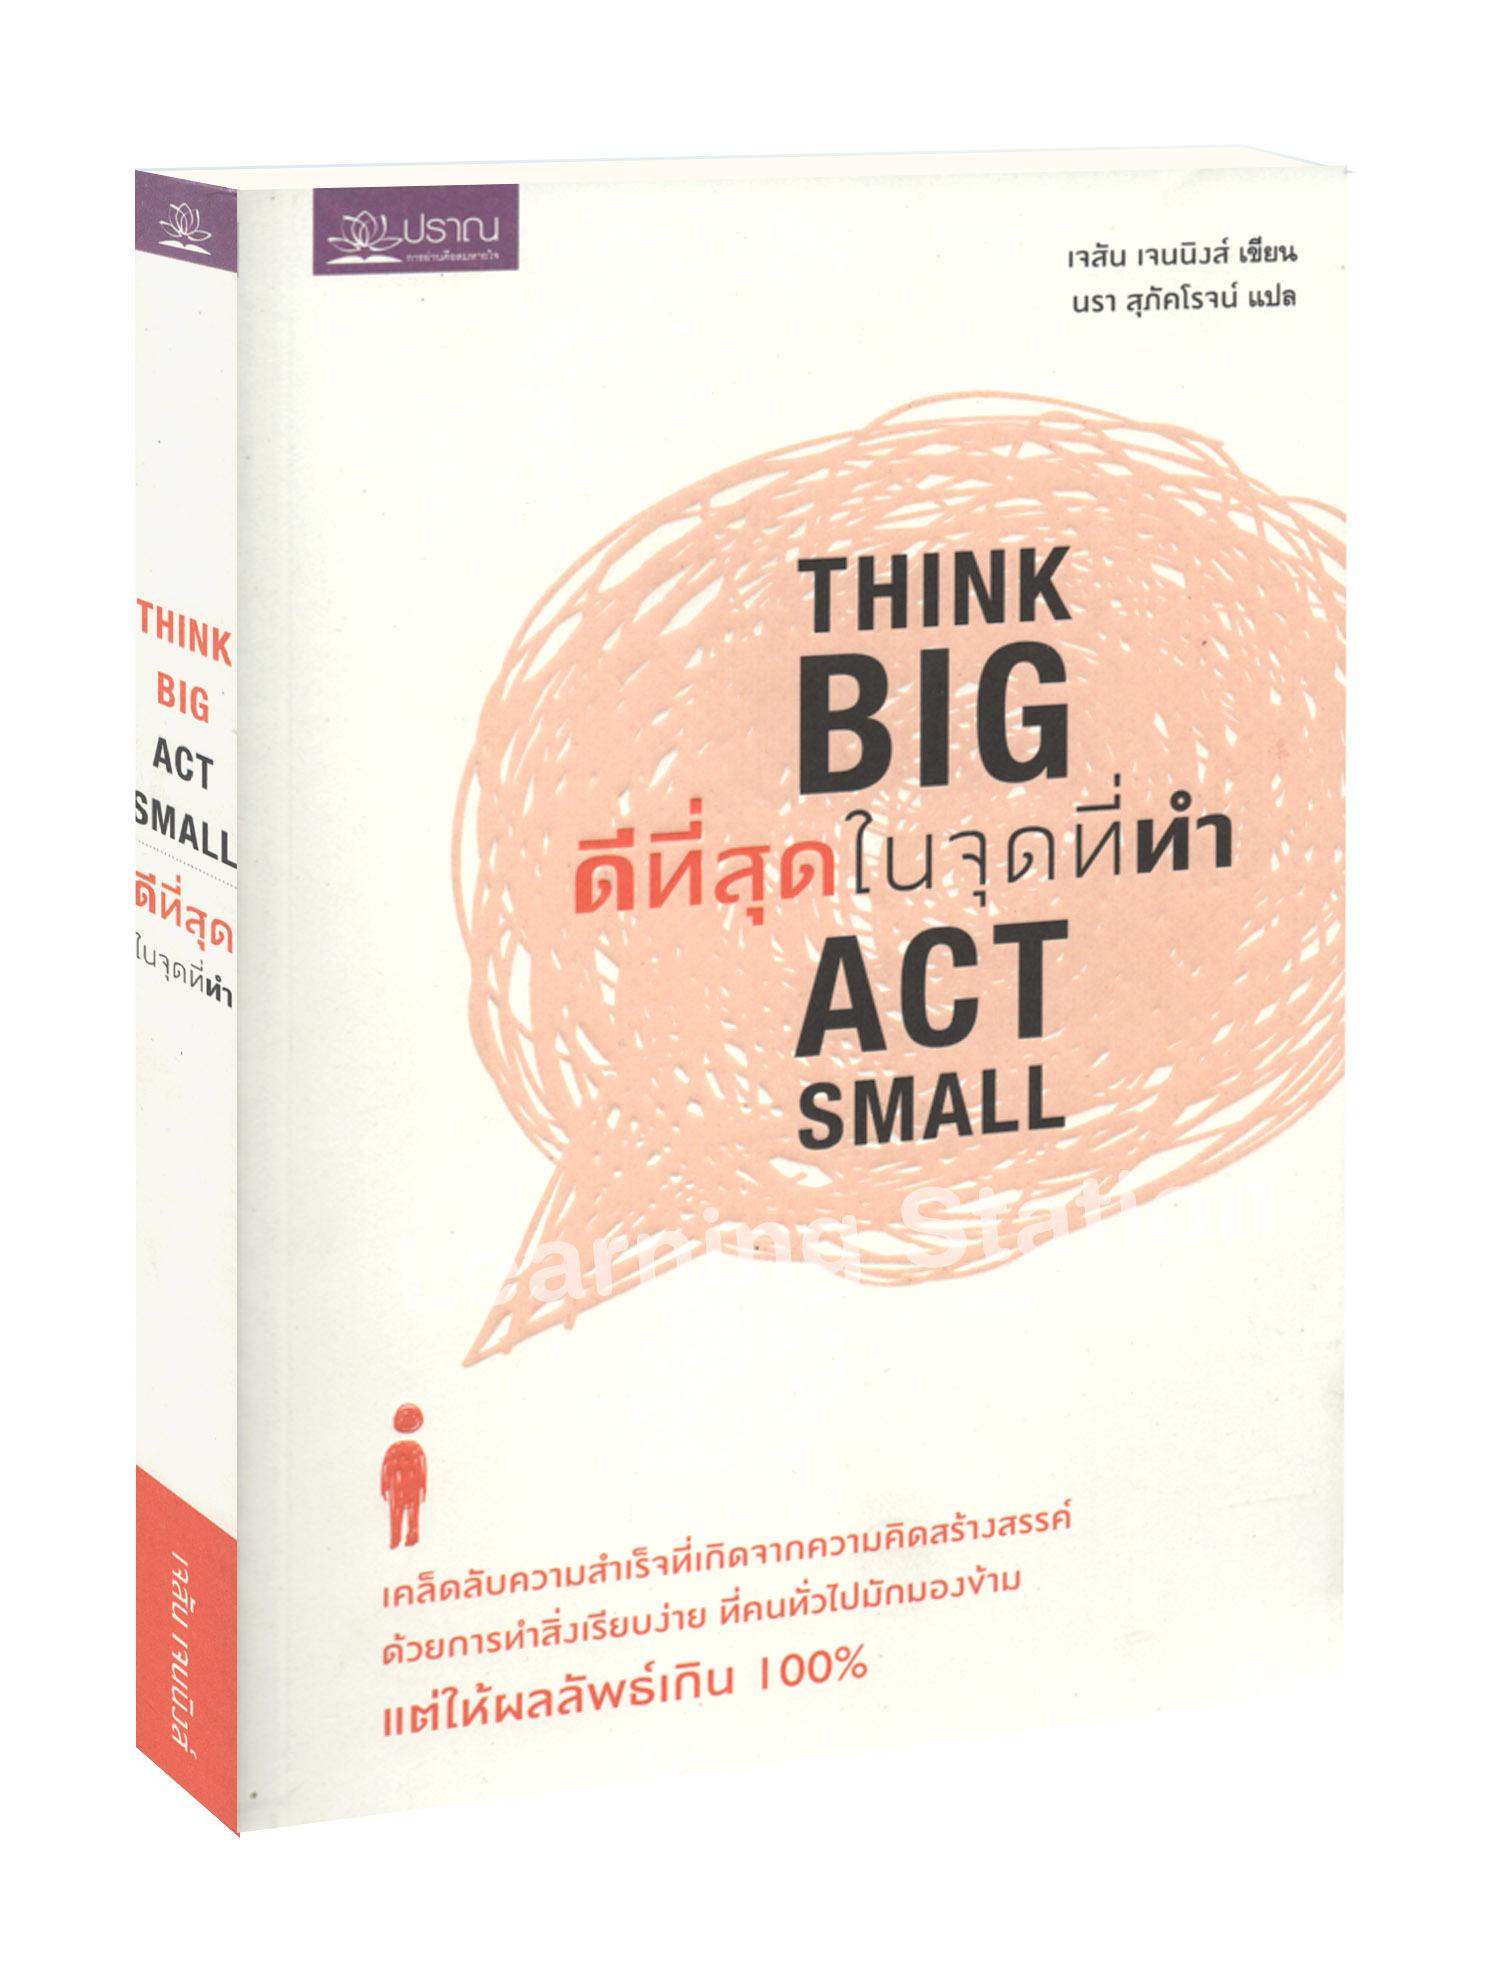 ดีที่สุด ในจุดที่ทำ :Think Big Act Small